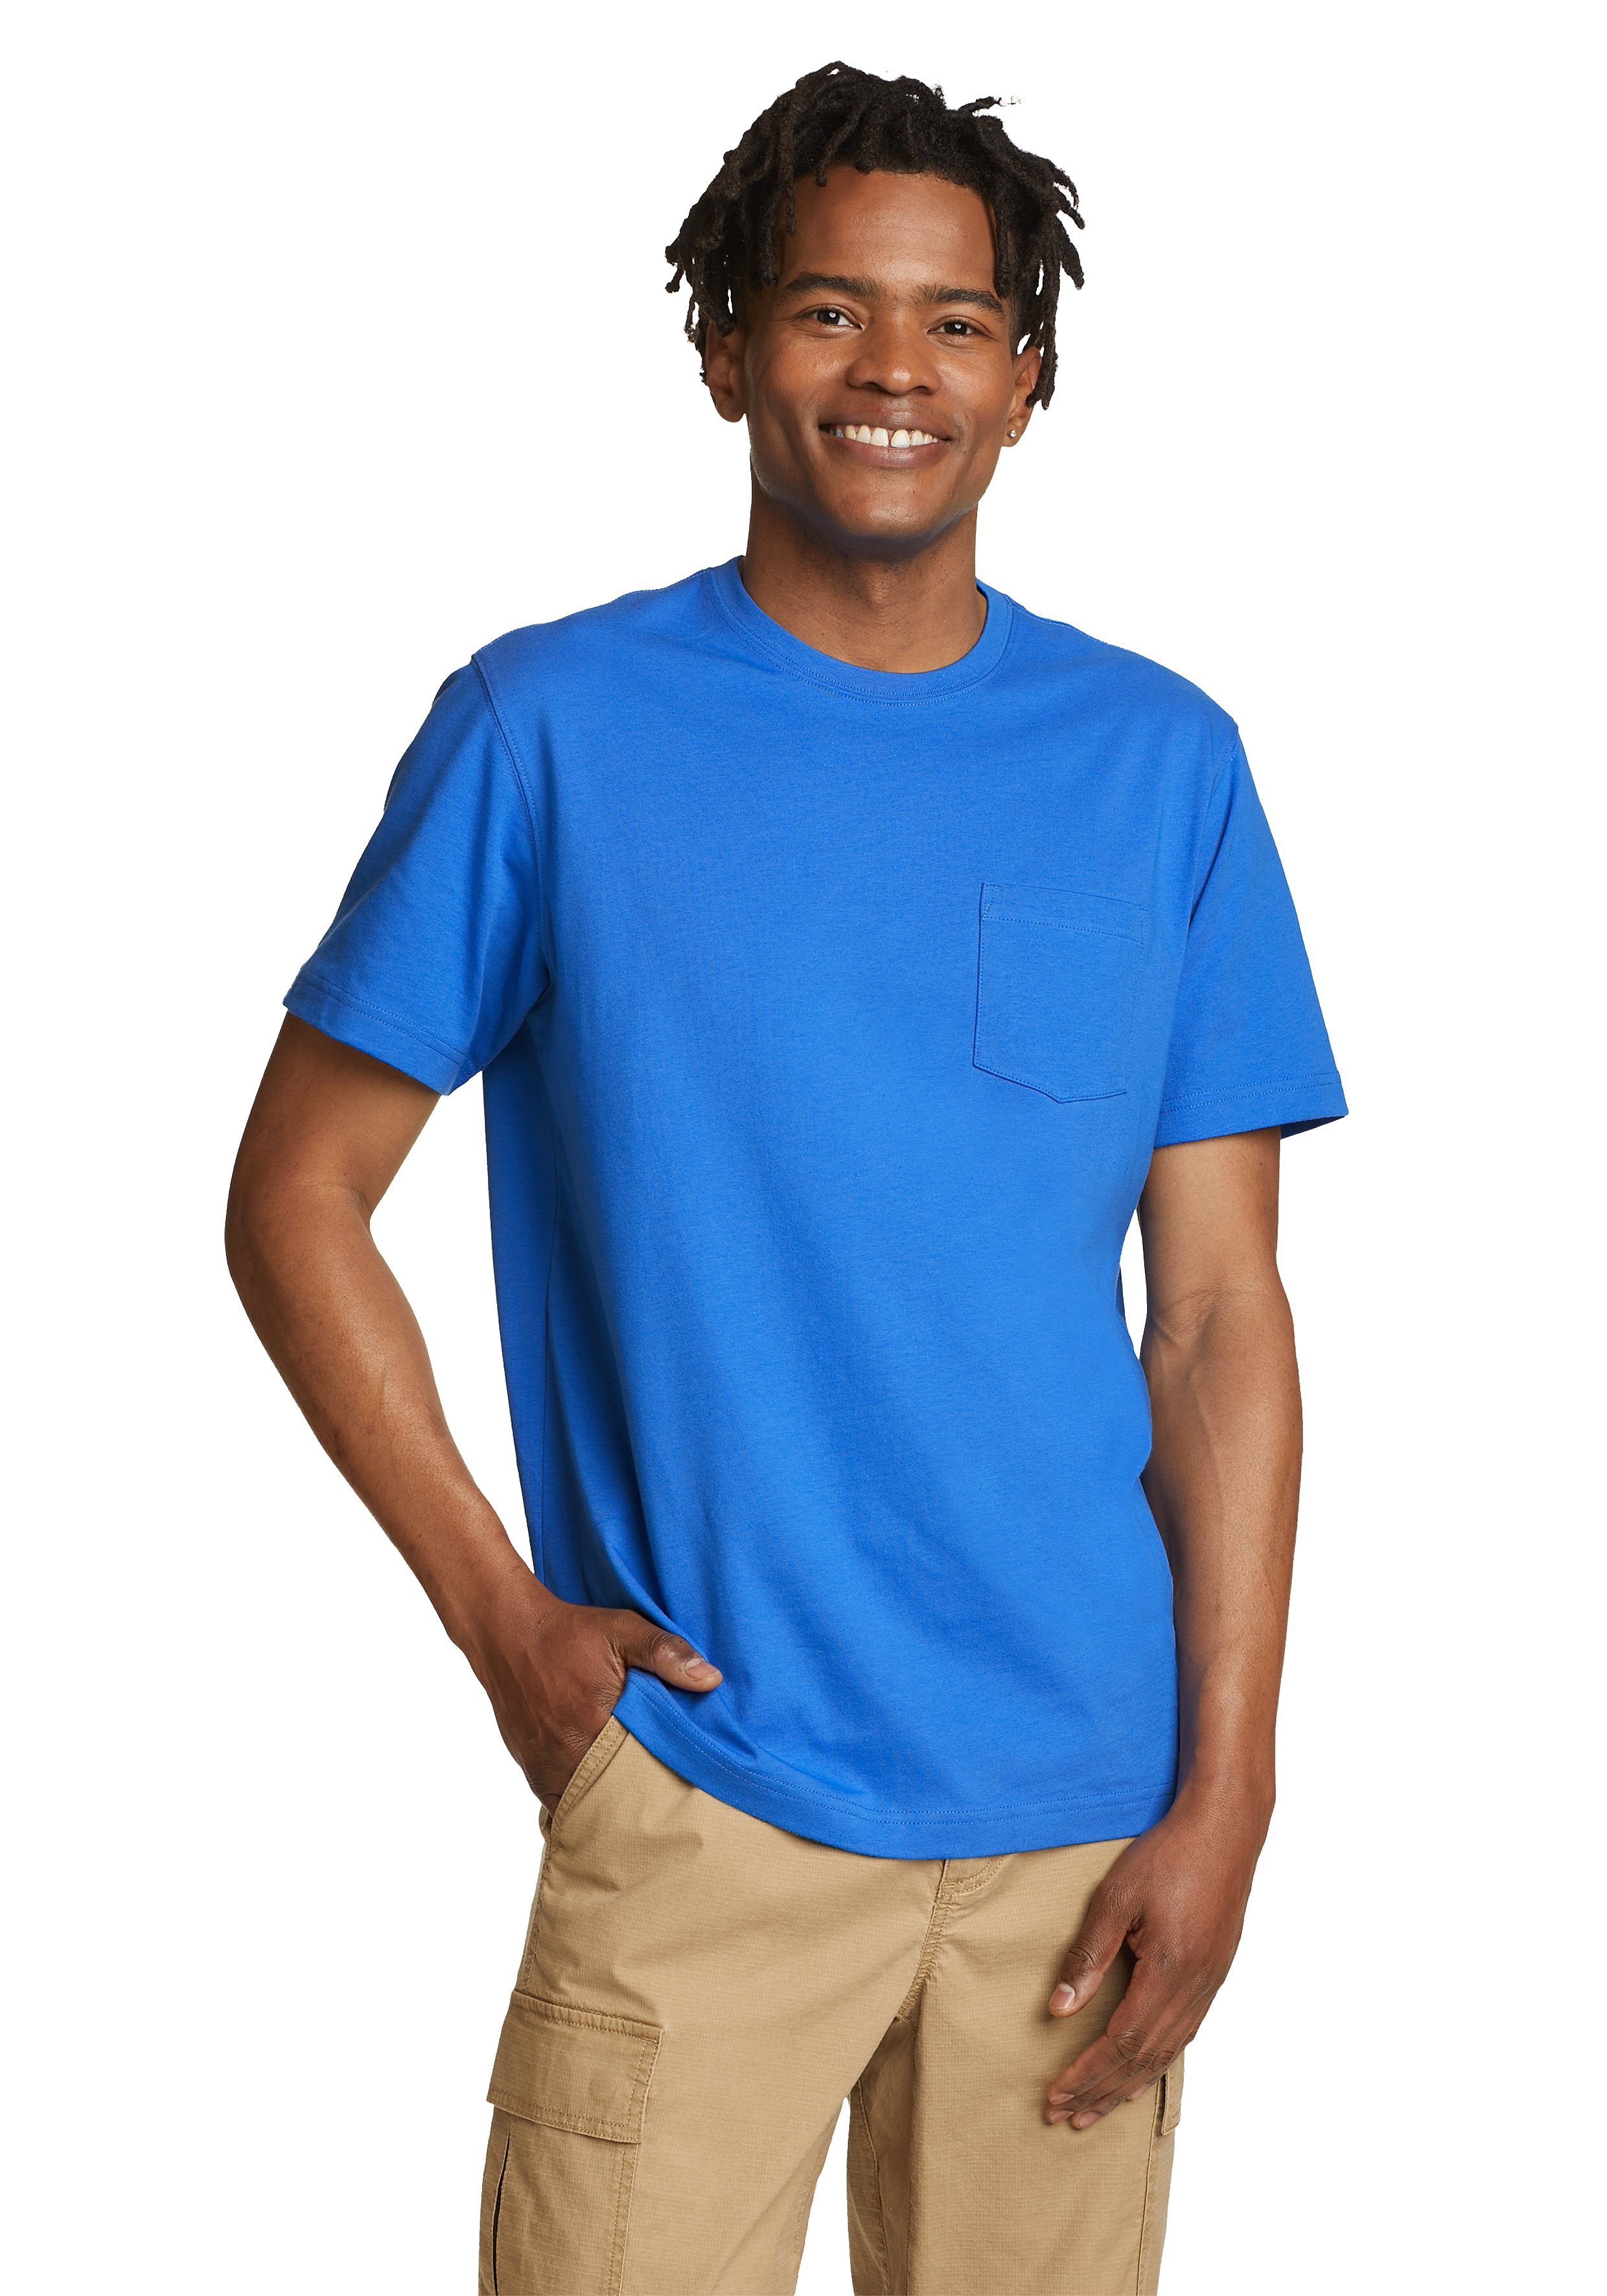 Shirt Legend mit Brilliantes Pro 100% - Blau Eddie T-Shirt Baumwolle Kurzarm Bauer Tasche Wash